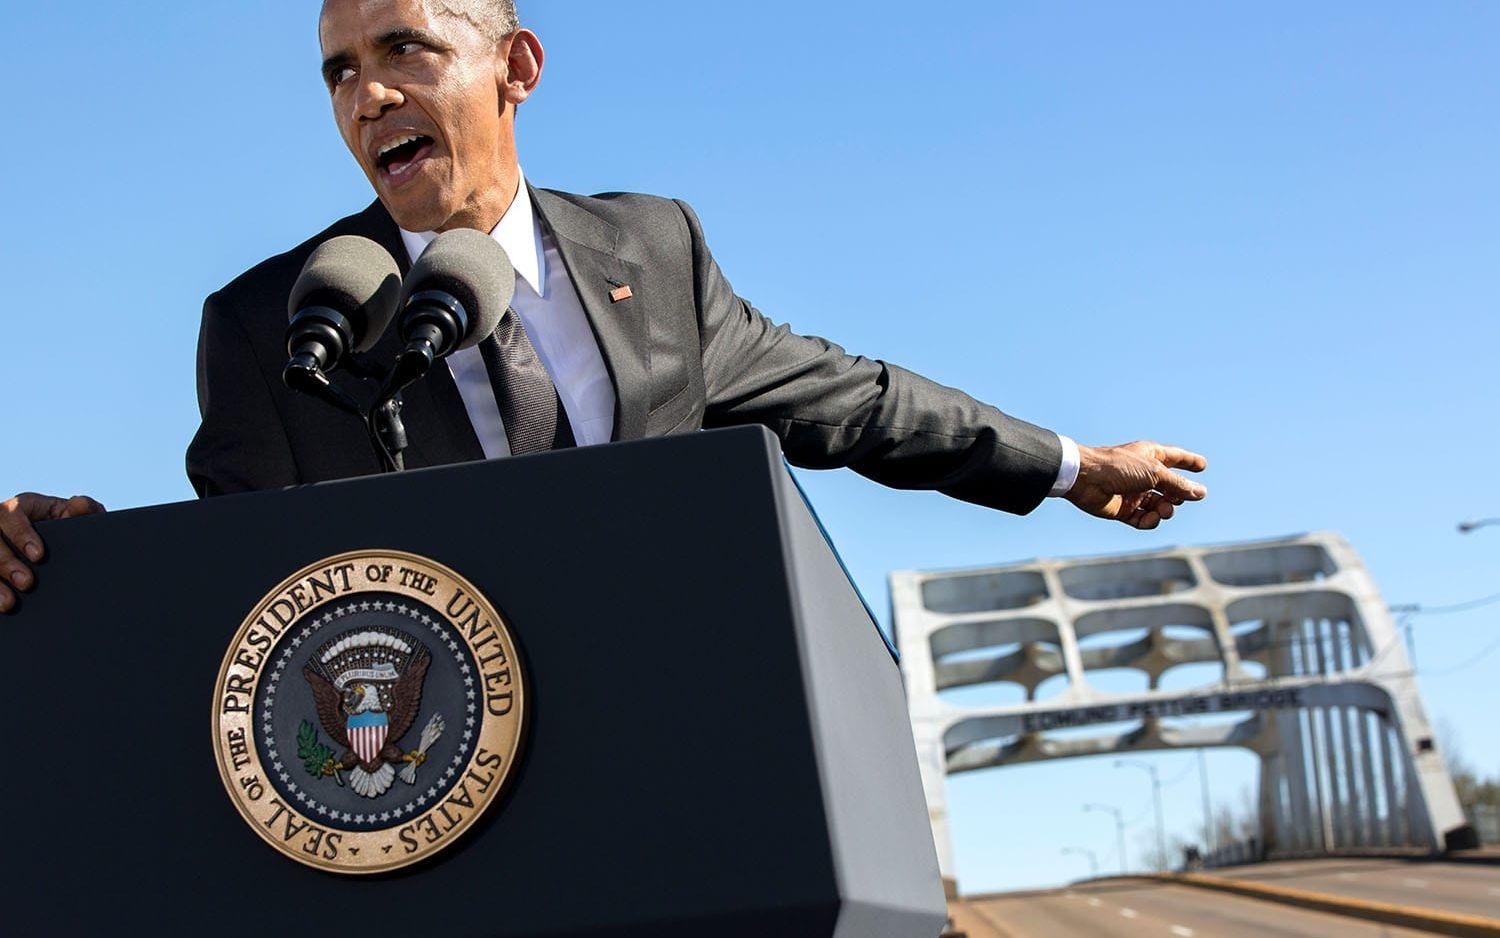 7 mars, 2015: Obama håller ett tal på minnesdagen av Bloody sunday i Alabama. Foto: Pete Souza / Vita Huset